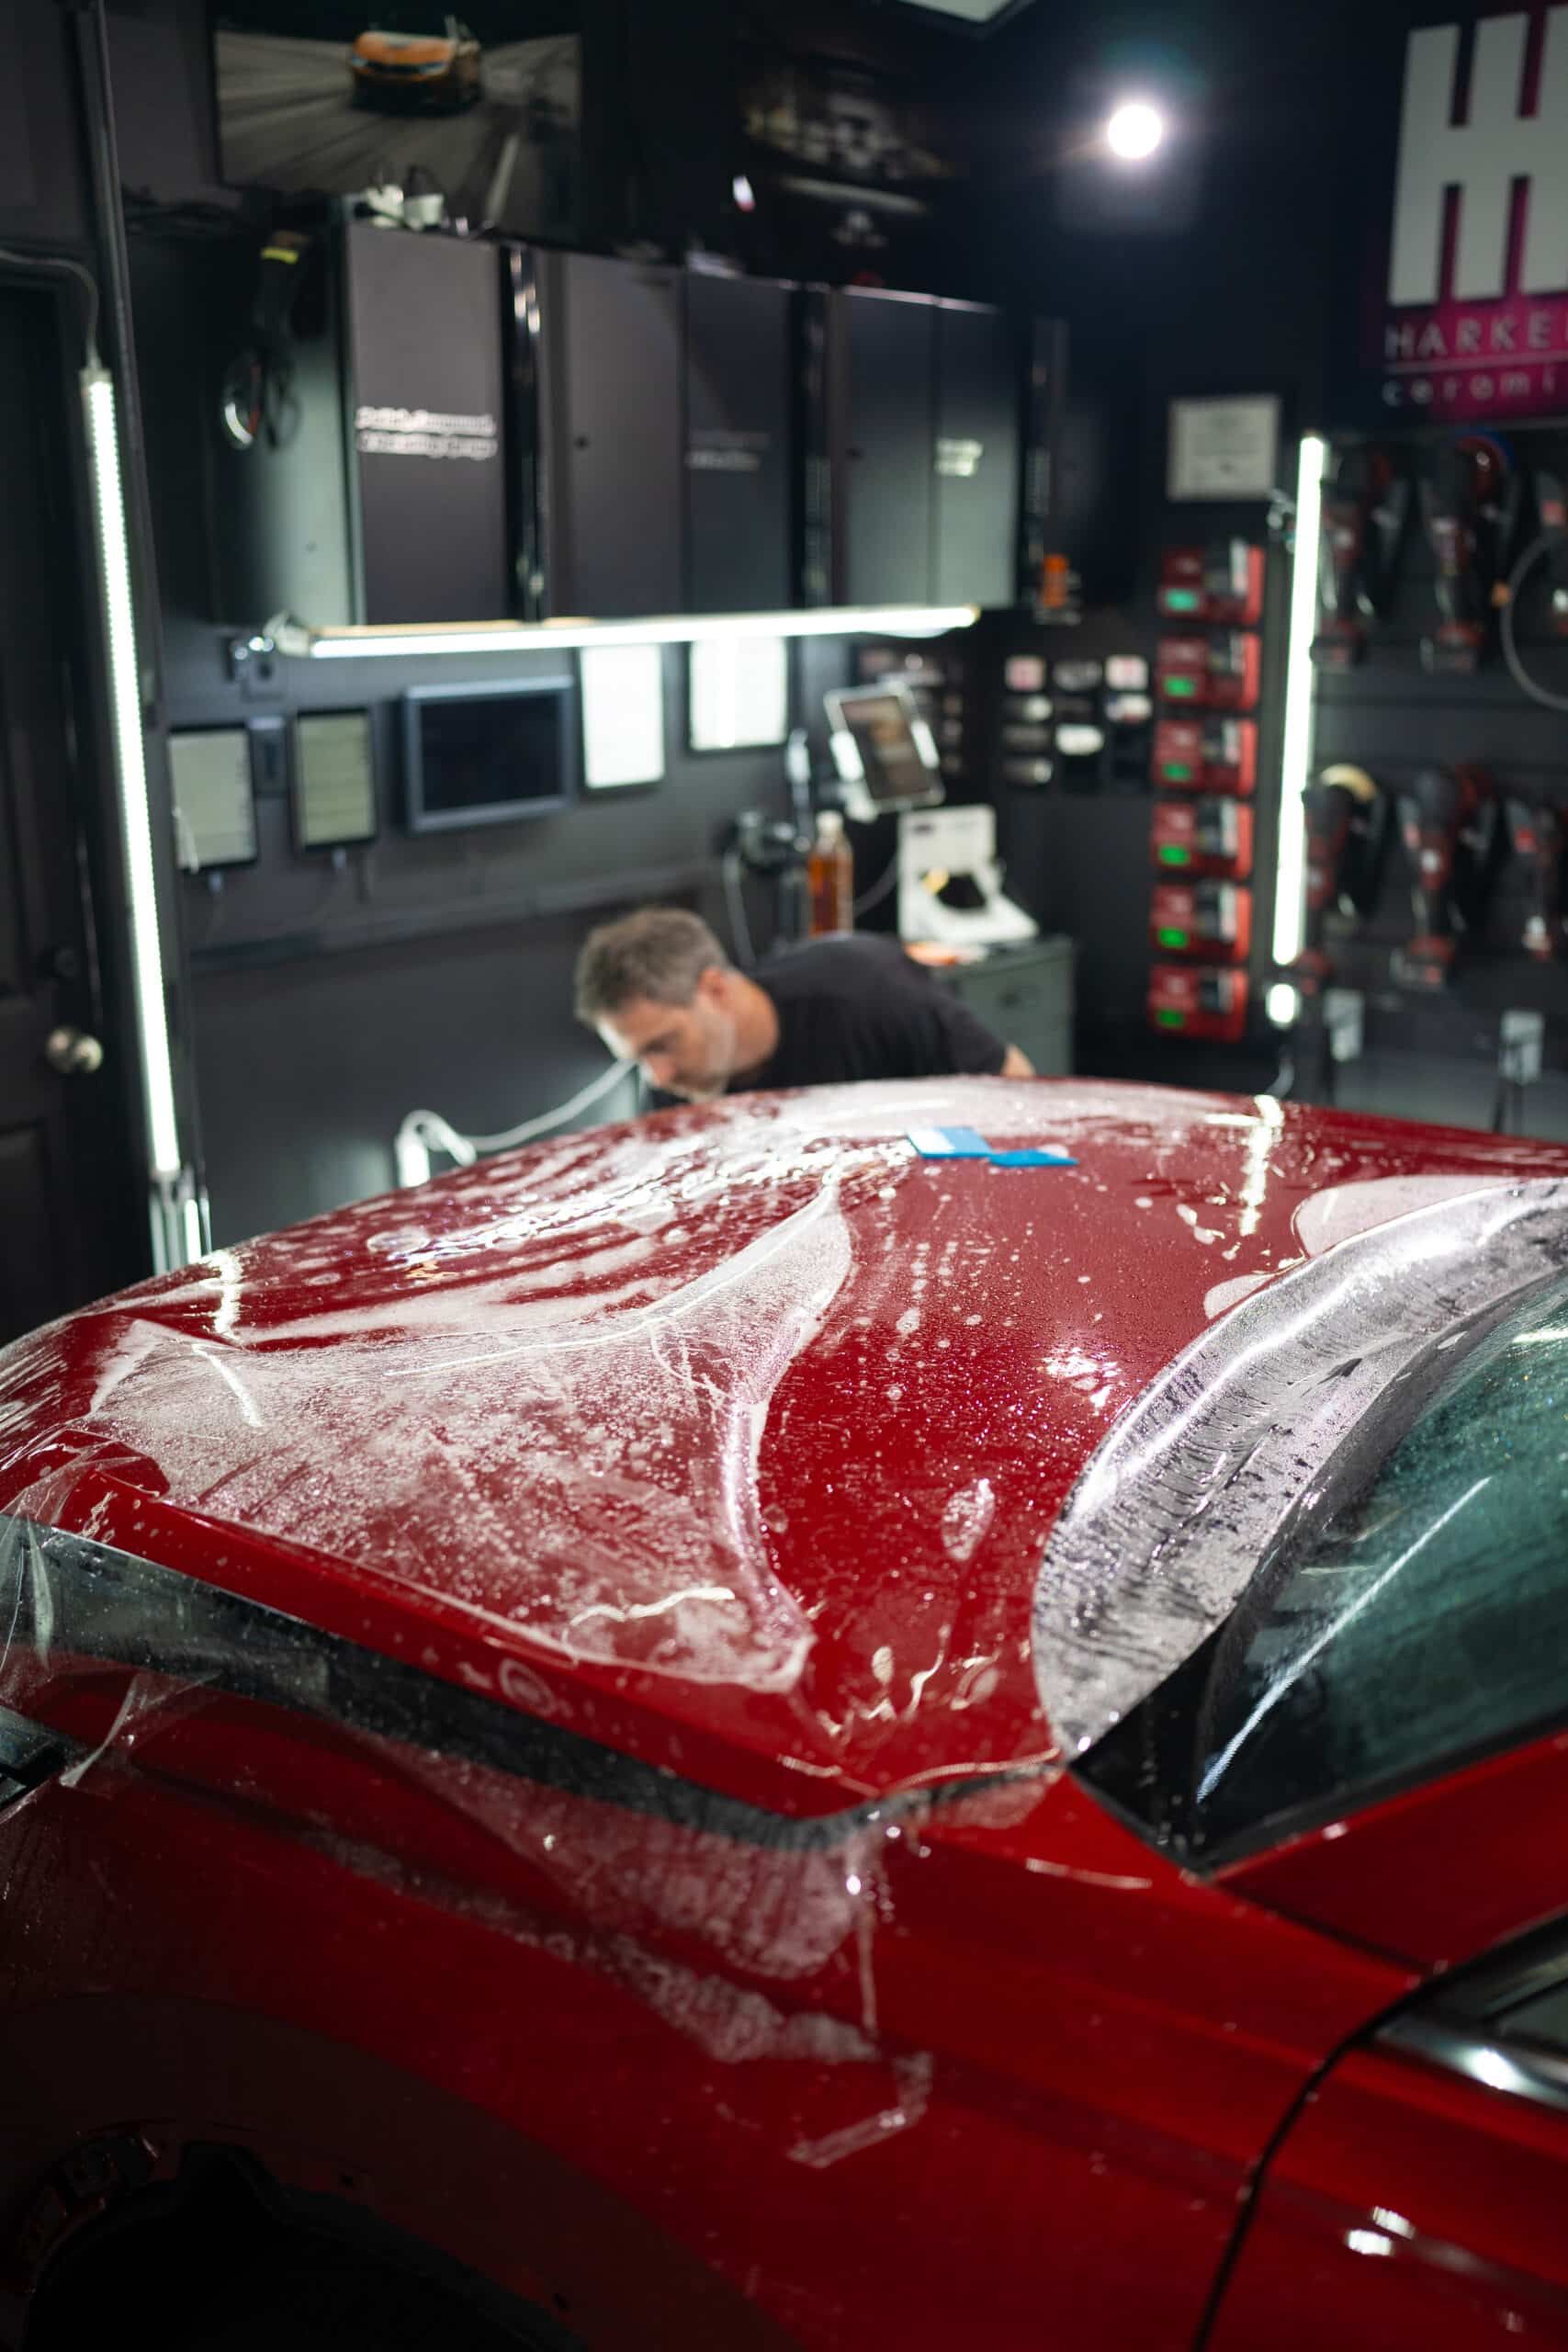 A man is working on the hood of a red car in a garage.